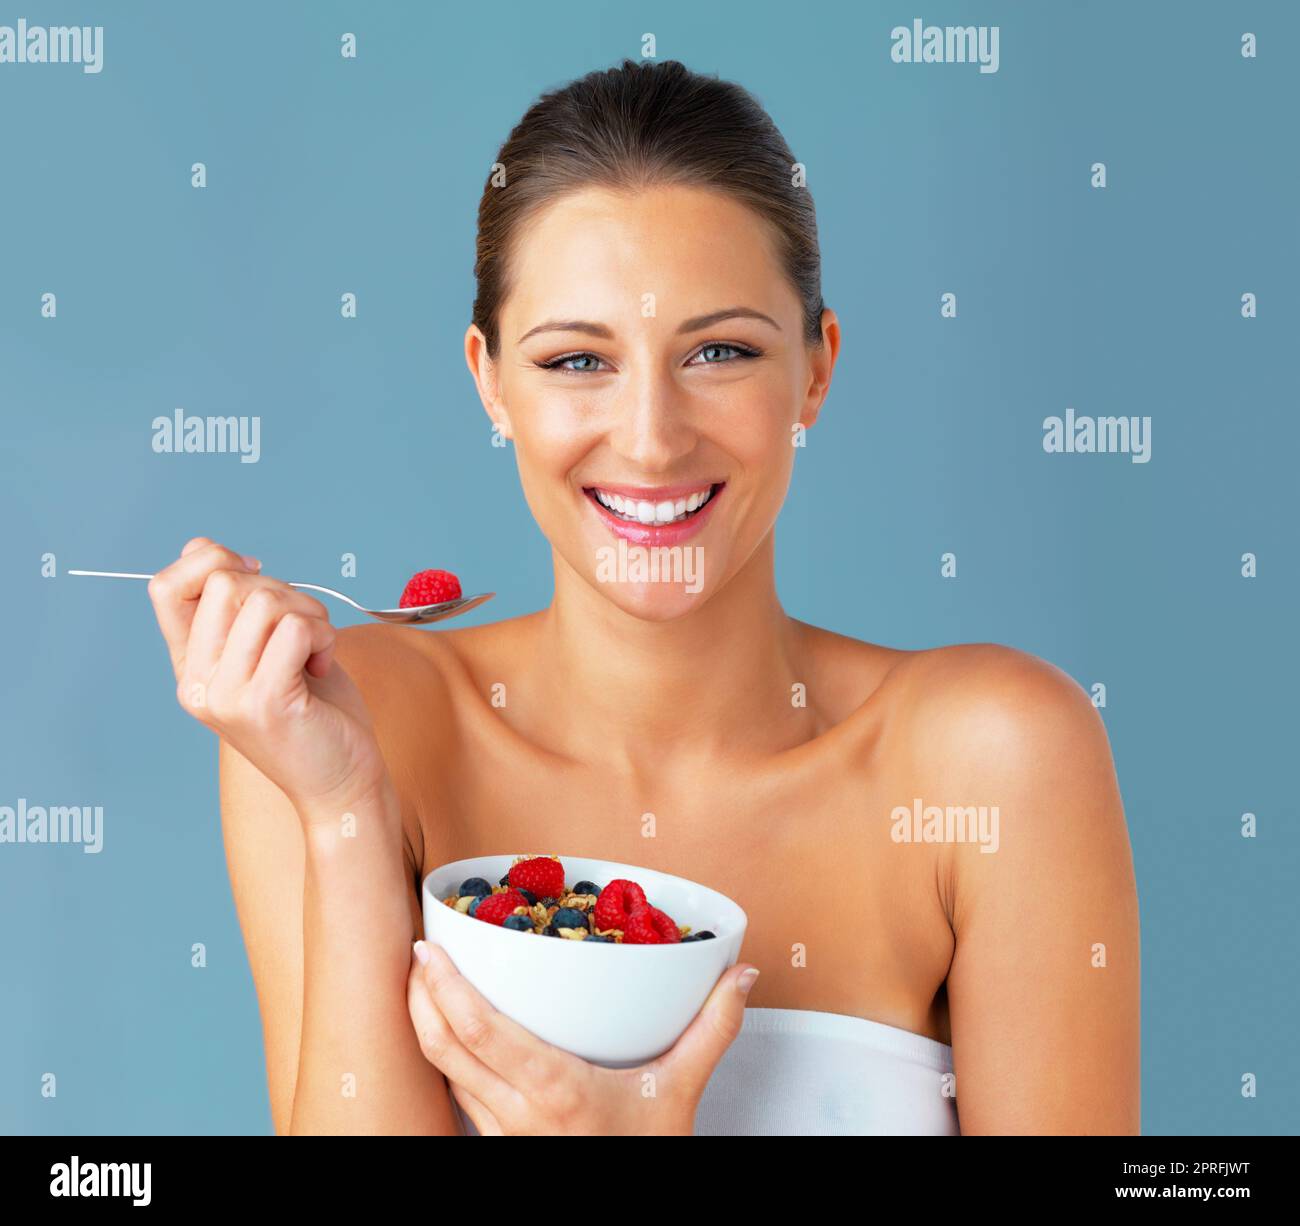 "Quand je mange bien, je me sens bien." Studio photo d'une jeune femme attrayante mangeant un bol de muesli et de fruits sur fond bleu. Banque D'Images